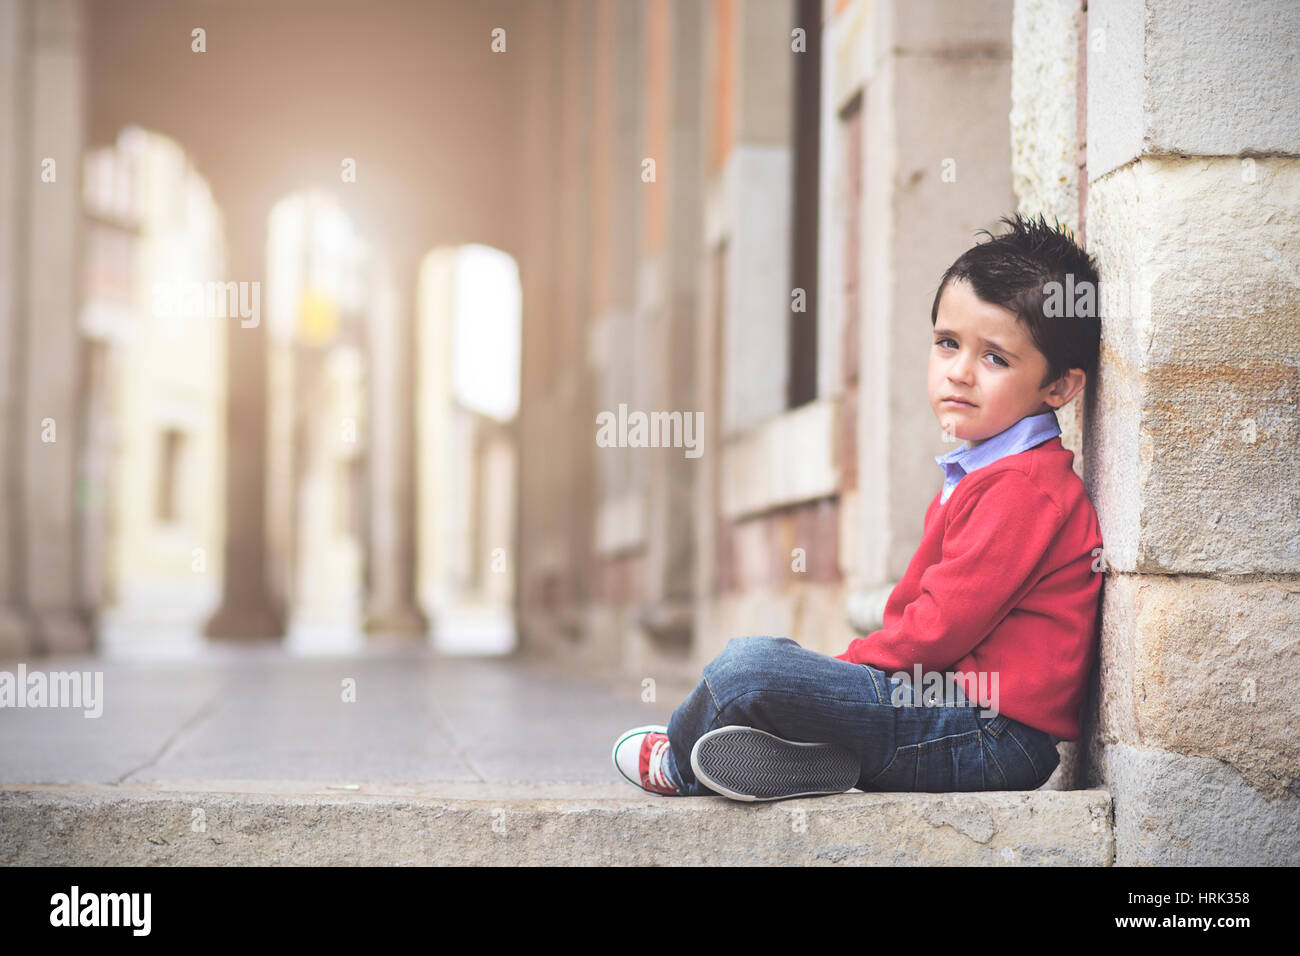 Traurige junge auf dem Boden sitzend Stockfoto